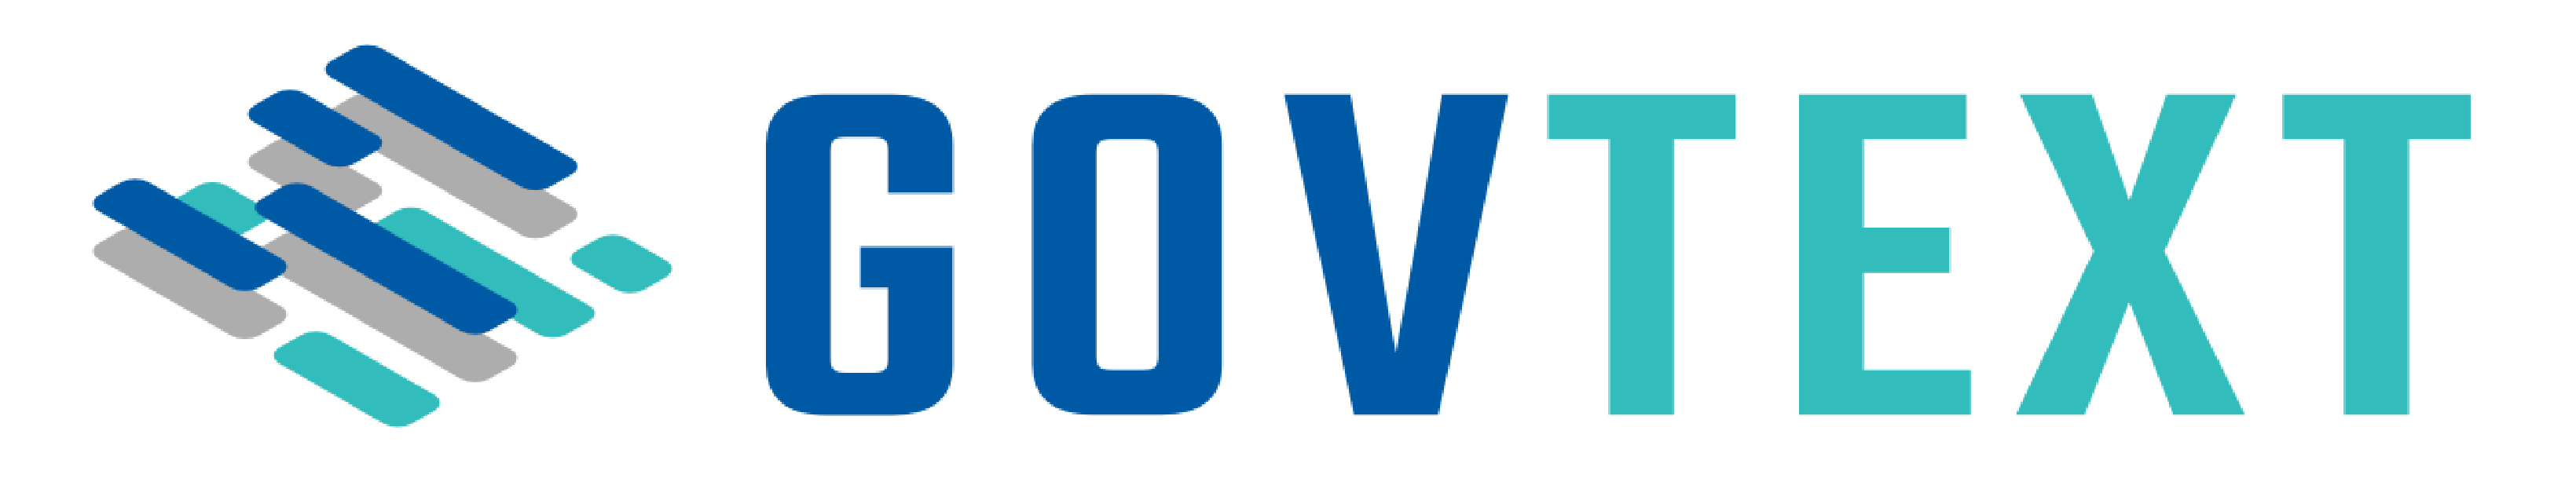 GovText logo